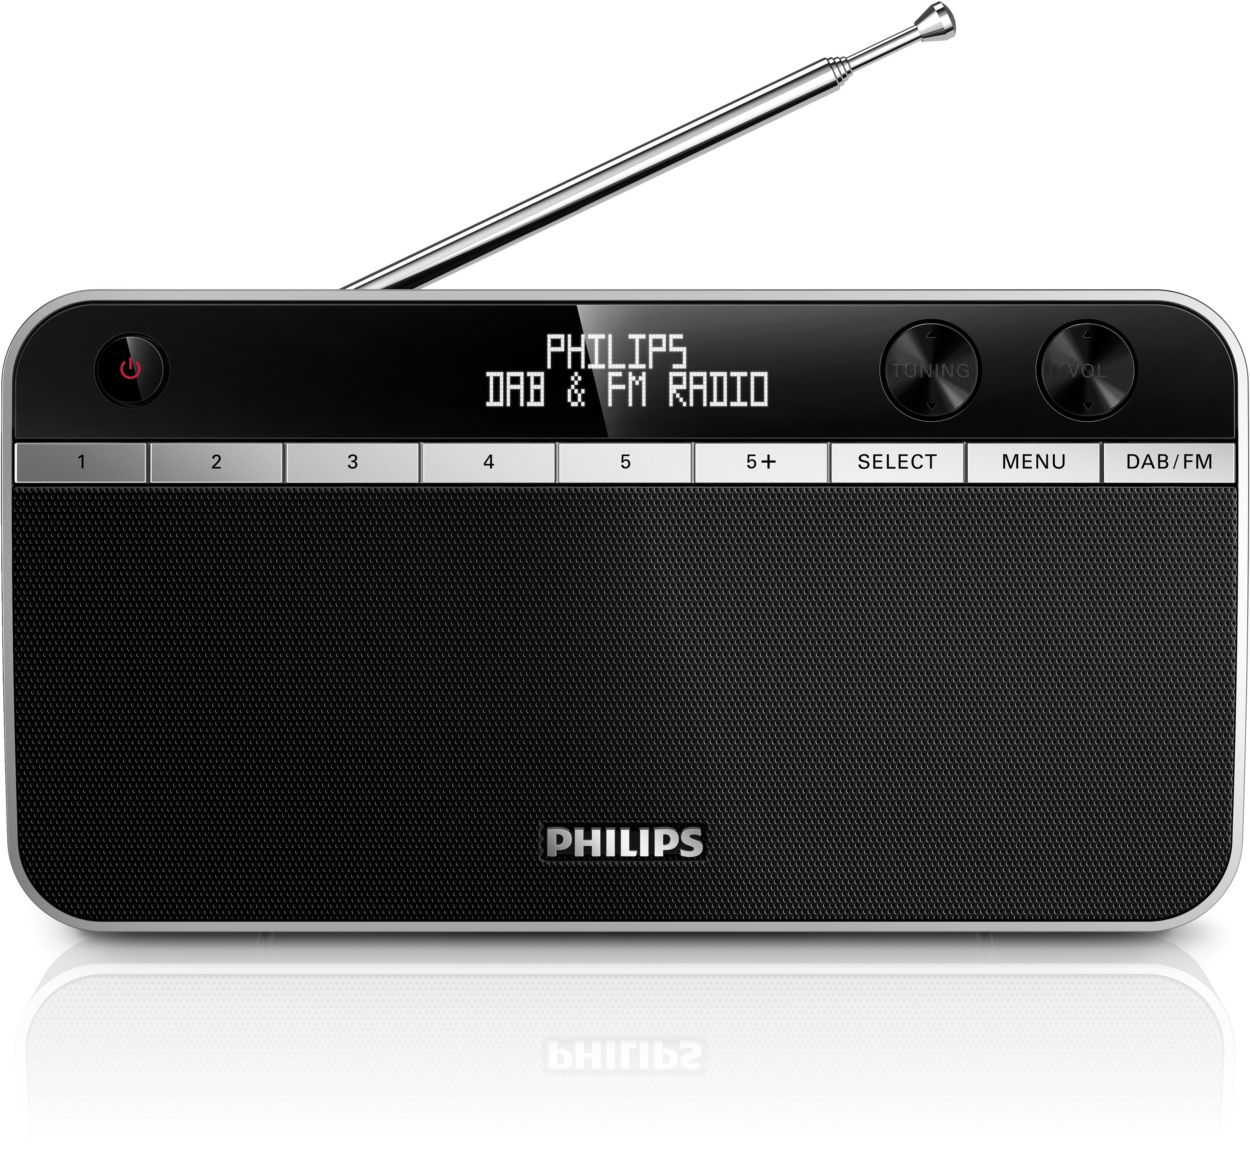 Ontwijken eenzaam item Draagbare radio AE5250/12 | Philips